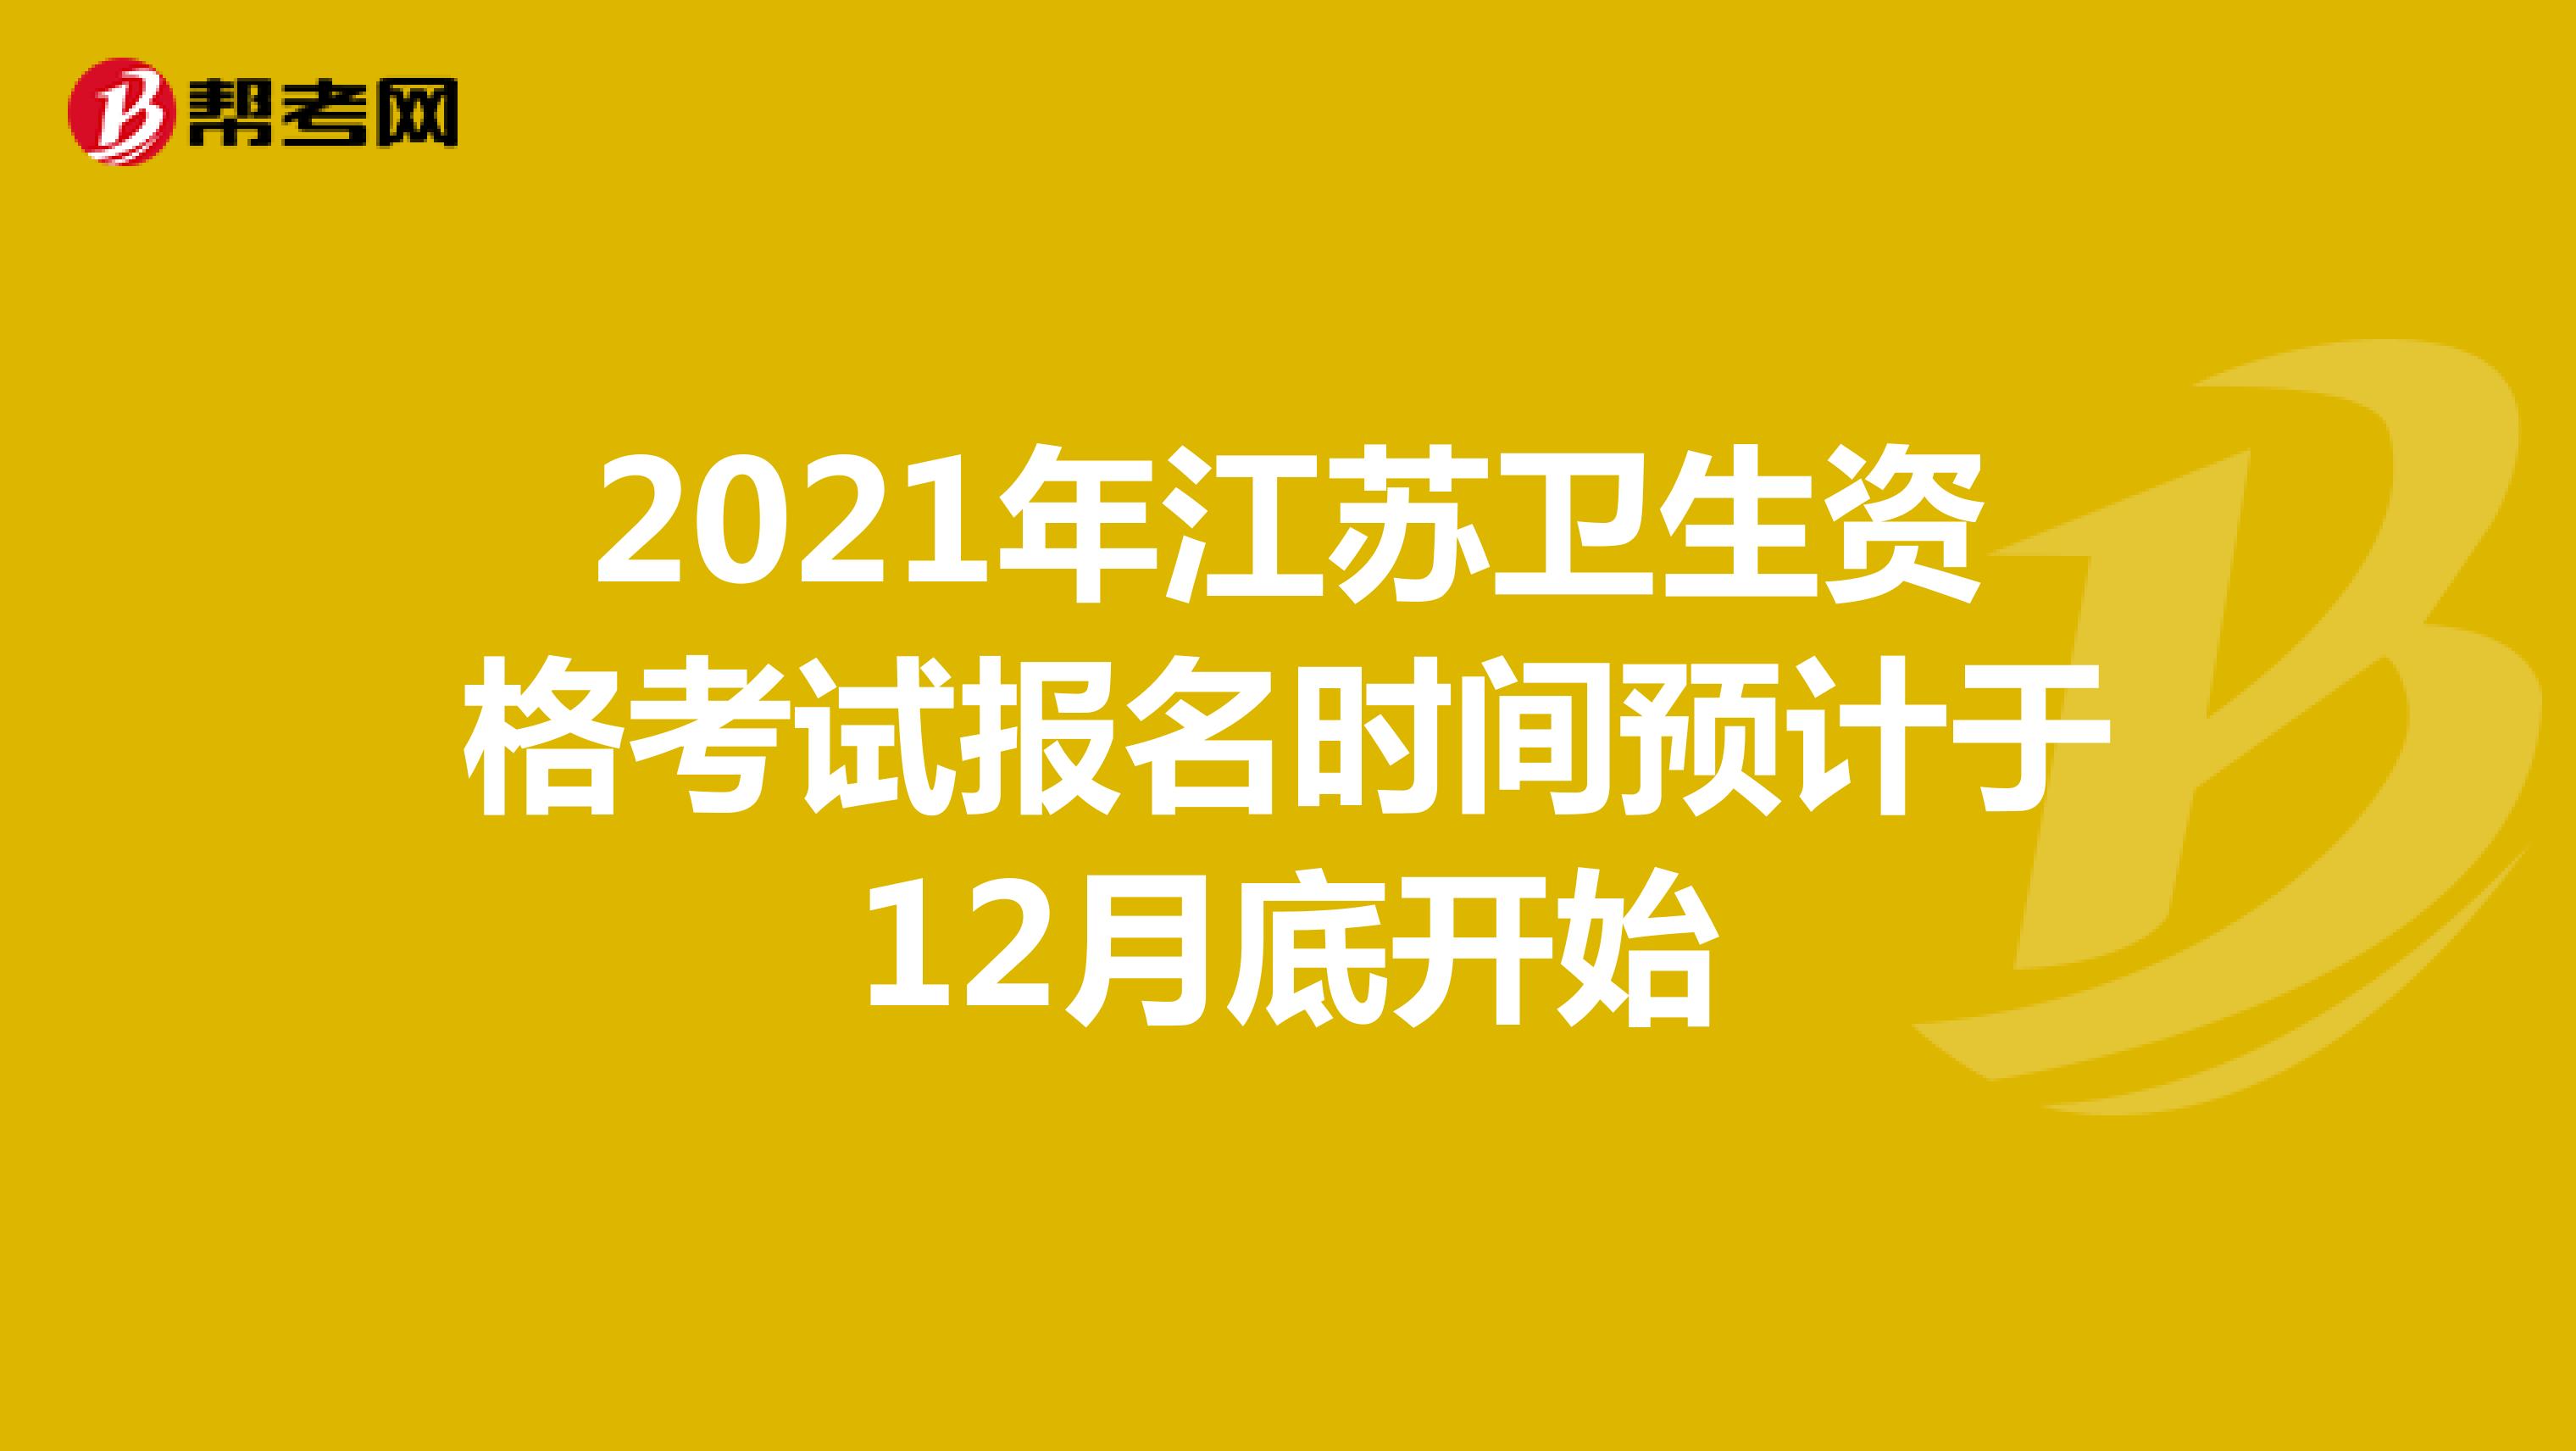 2021年江苏卫生资格考试报名时间预计于12月底开始